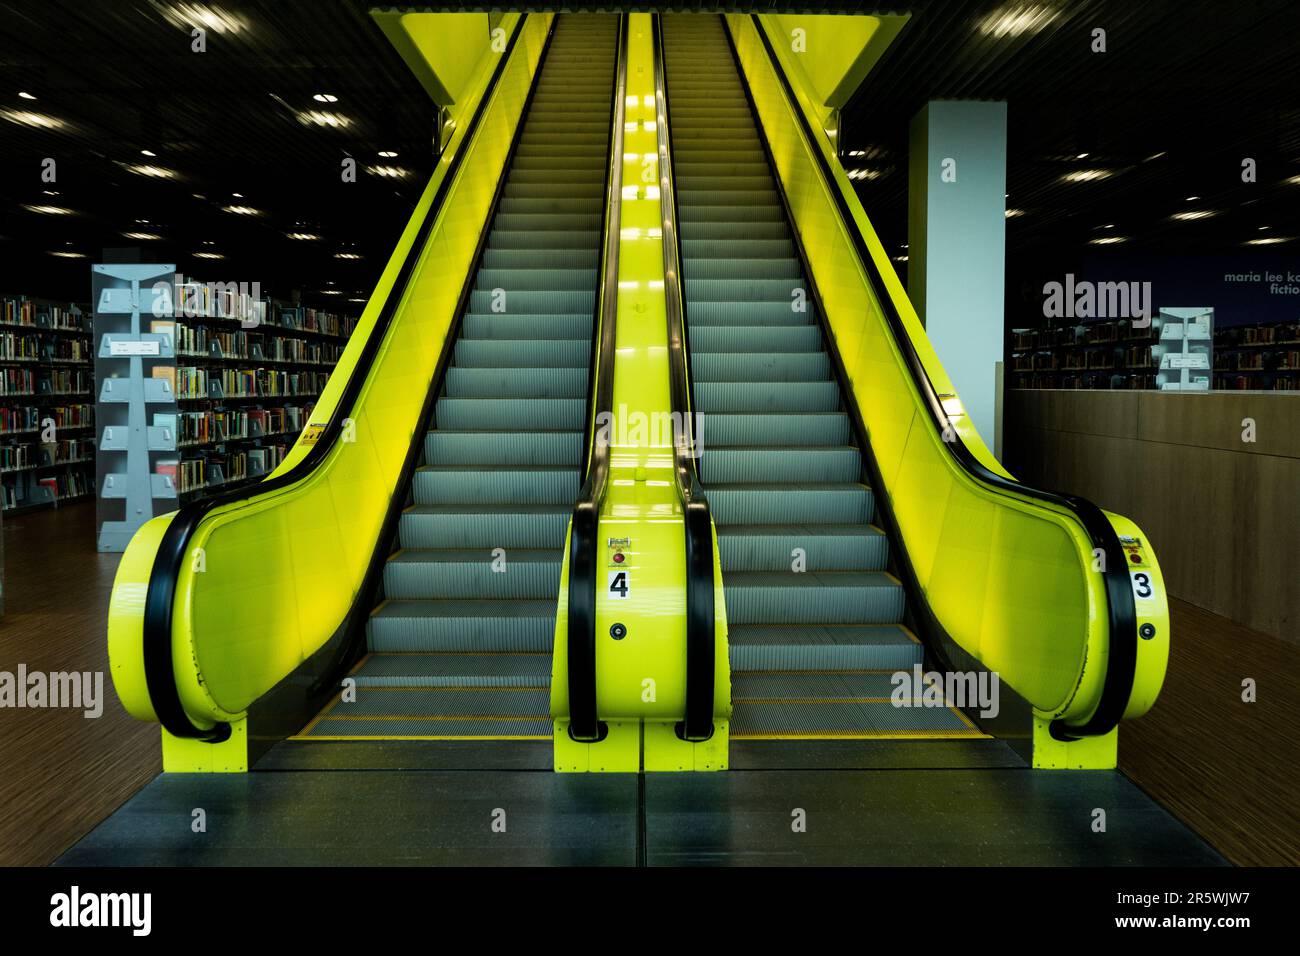 Eine Rolltreppe ist in einem Einzelhandelsbuchladen gut sichtbar und bietet Kunden einen einfachen Zugang zu den oberen Ebenen des Geschäfts Stockfoto